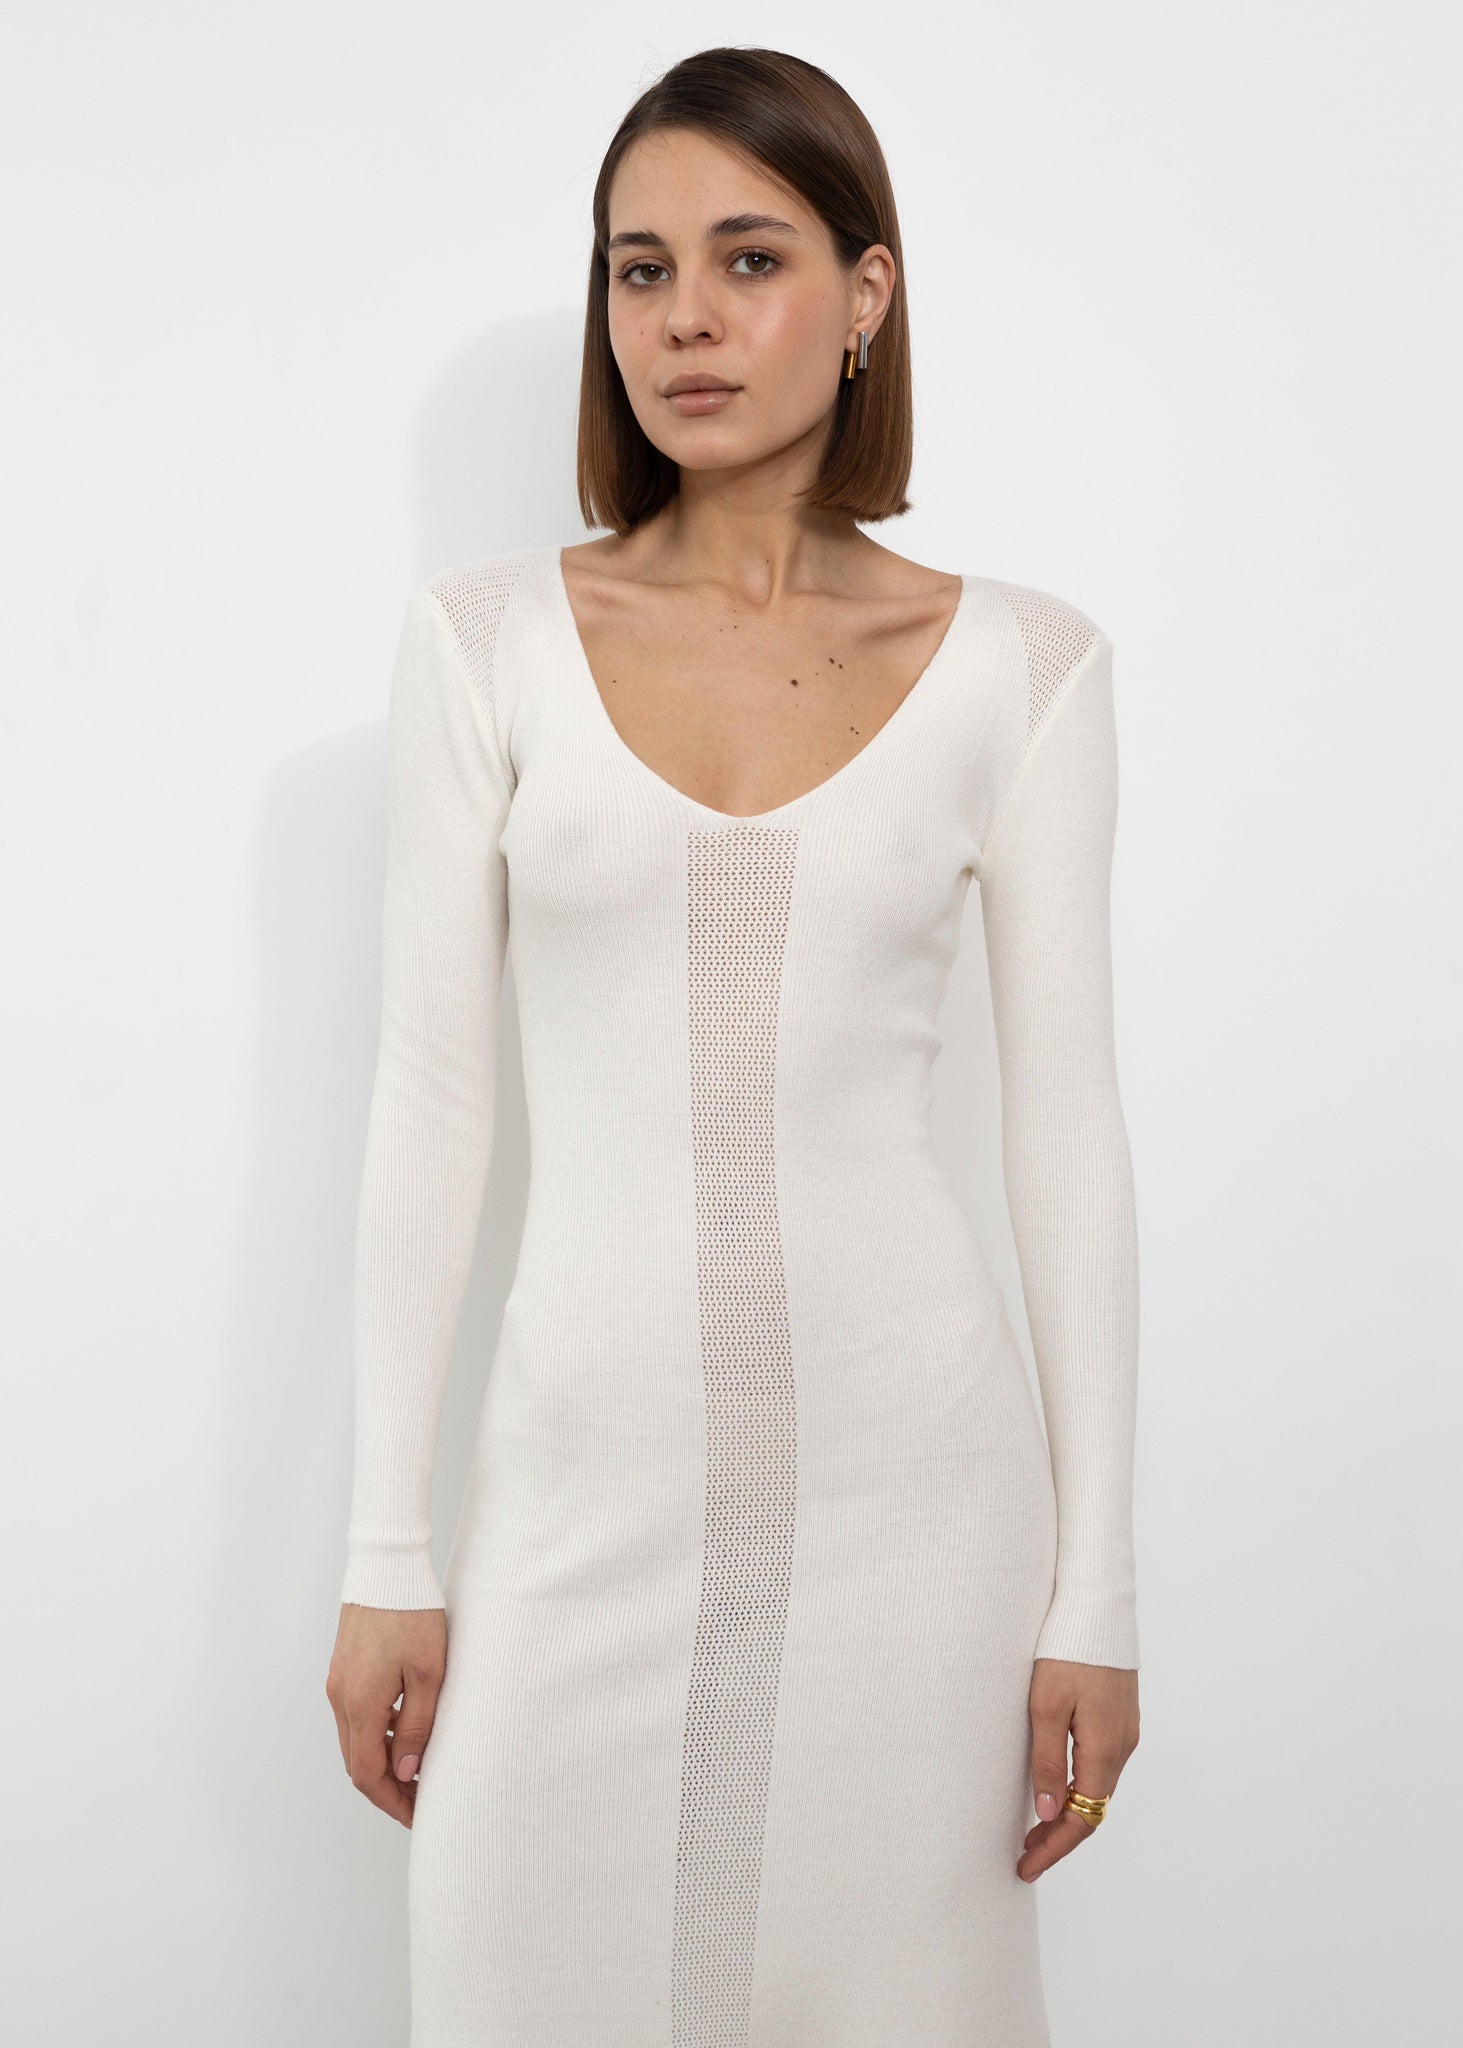 Elegant Cream White Knitted Dress